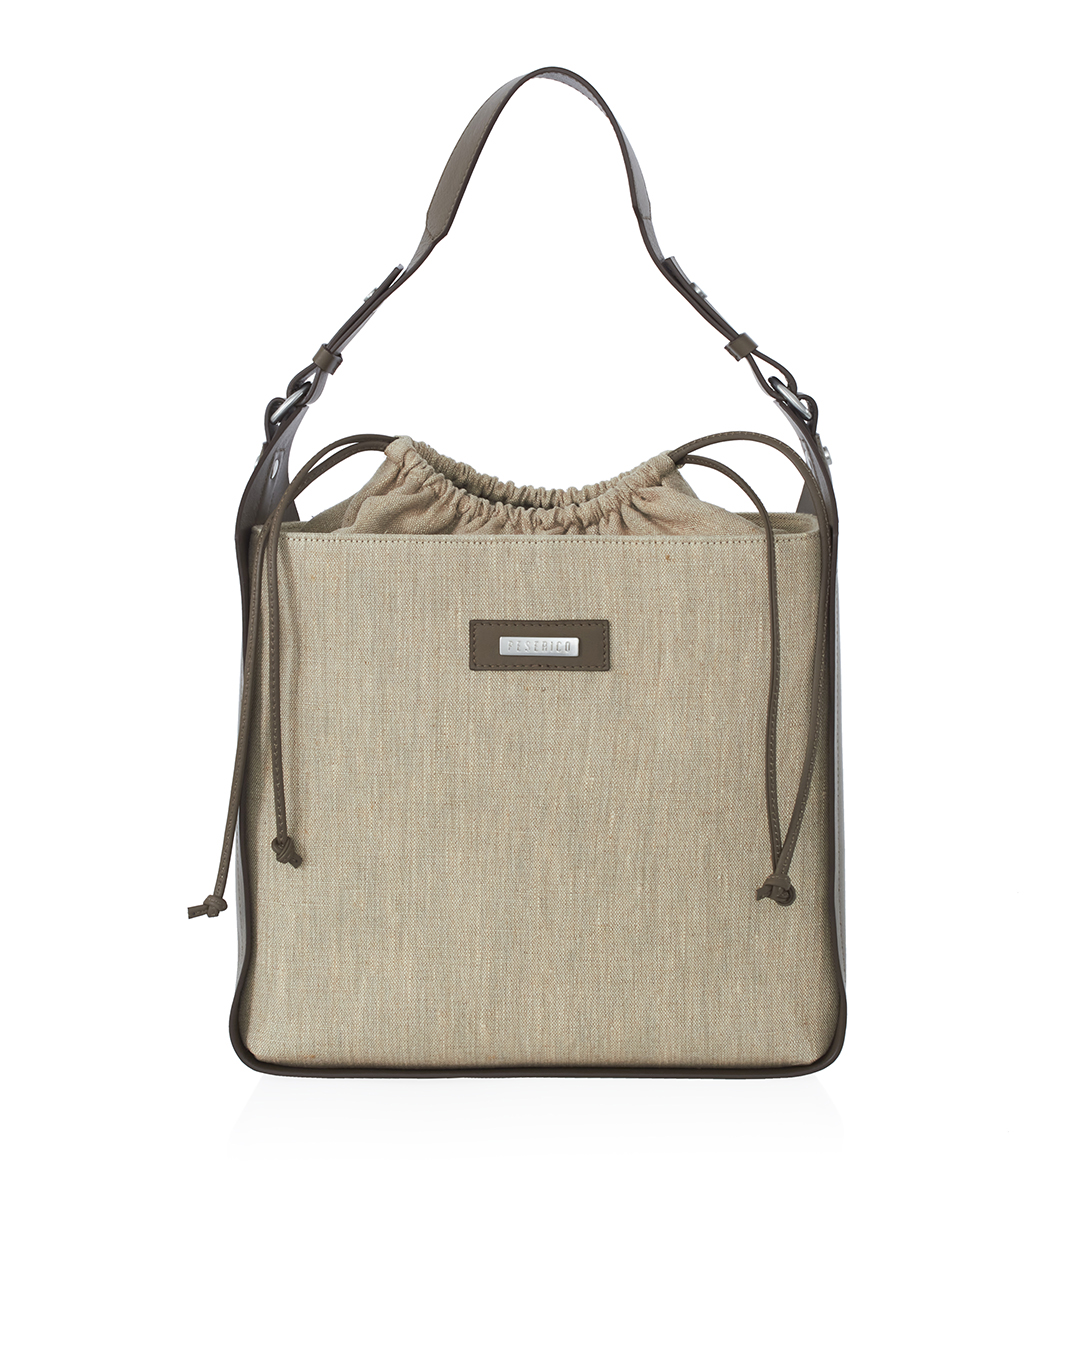 сумка Peserico S38266C0 коричневый+бежевый UNI, размер UNI, цвет коричневый+бежевый